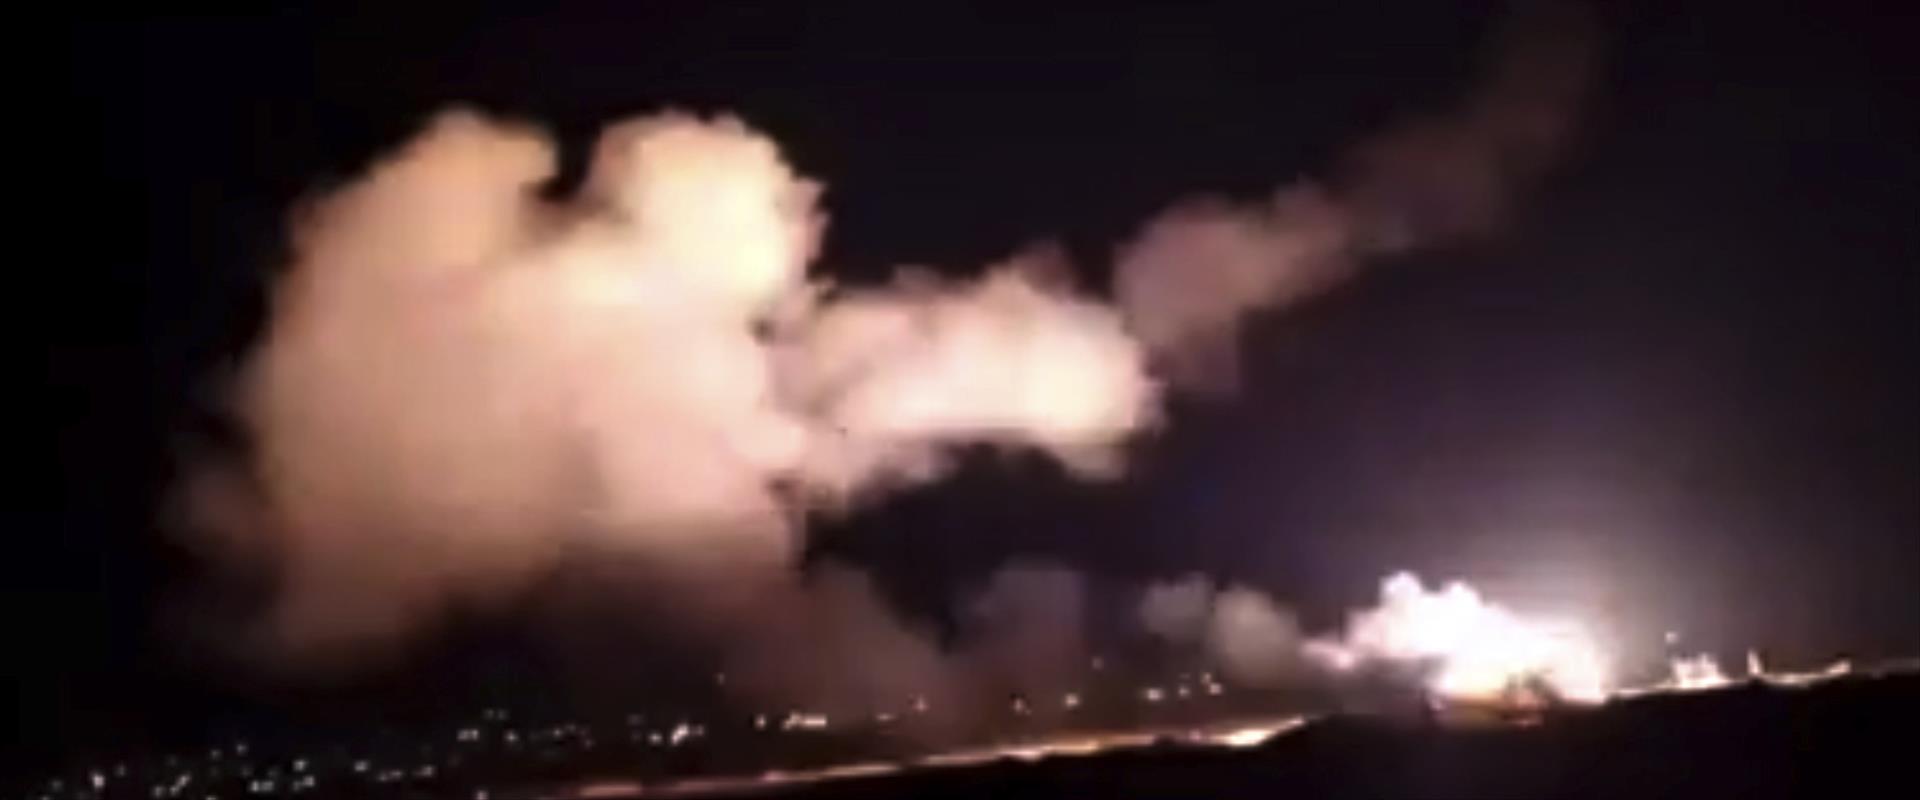 עשן טילים בסוריה, הלילה. מתוך צילום של הטלוויזיה ה